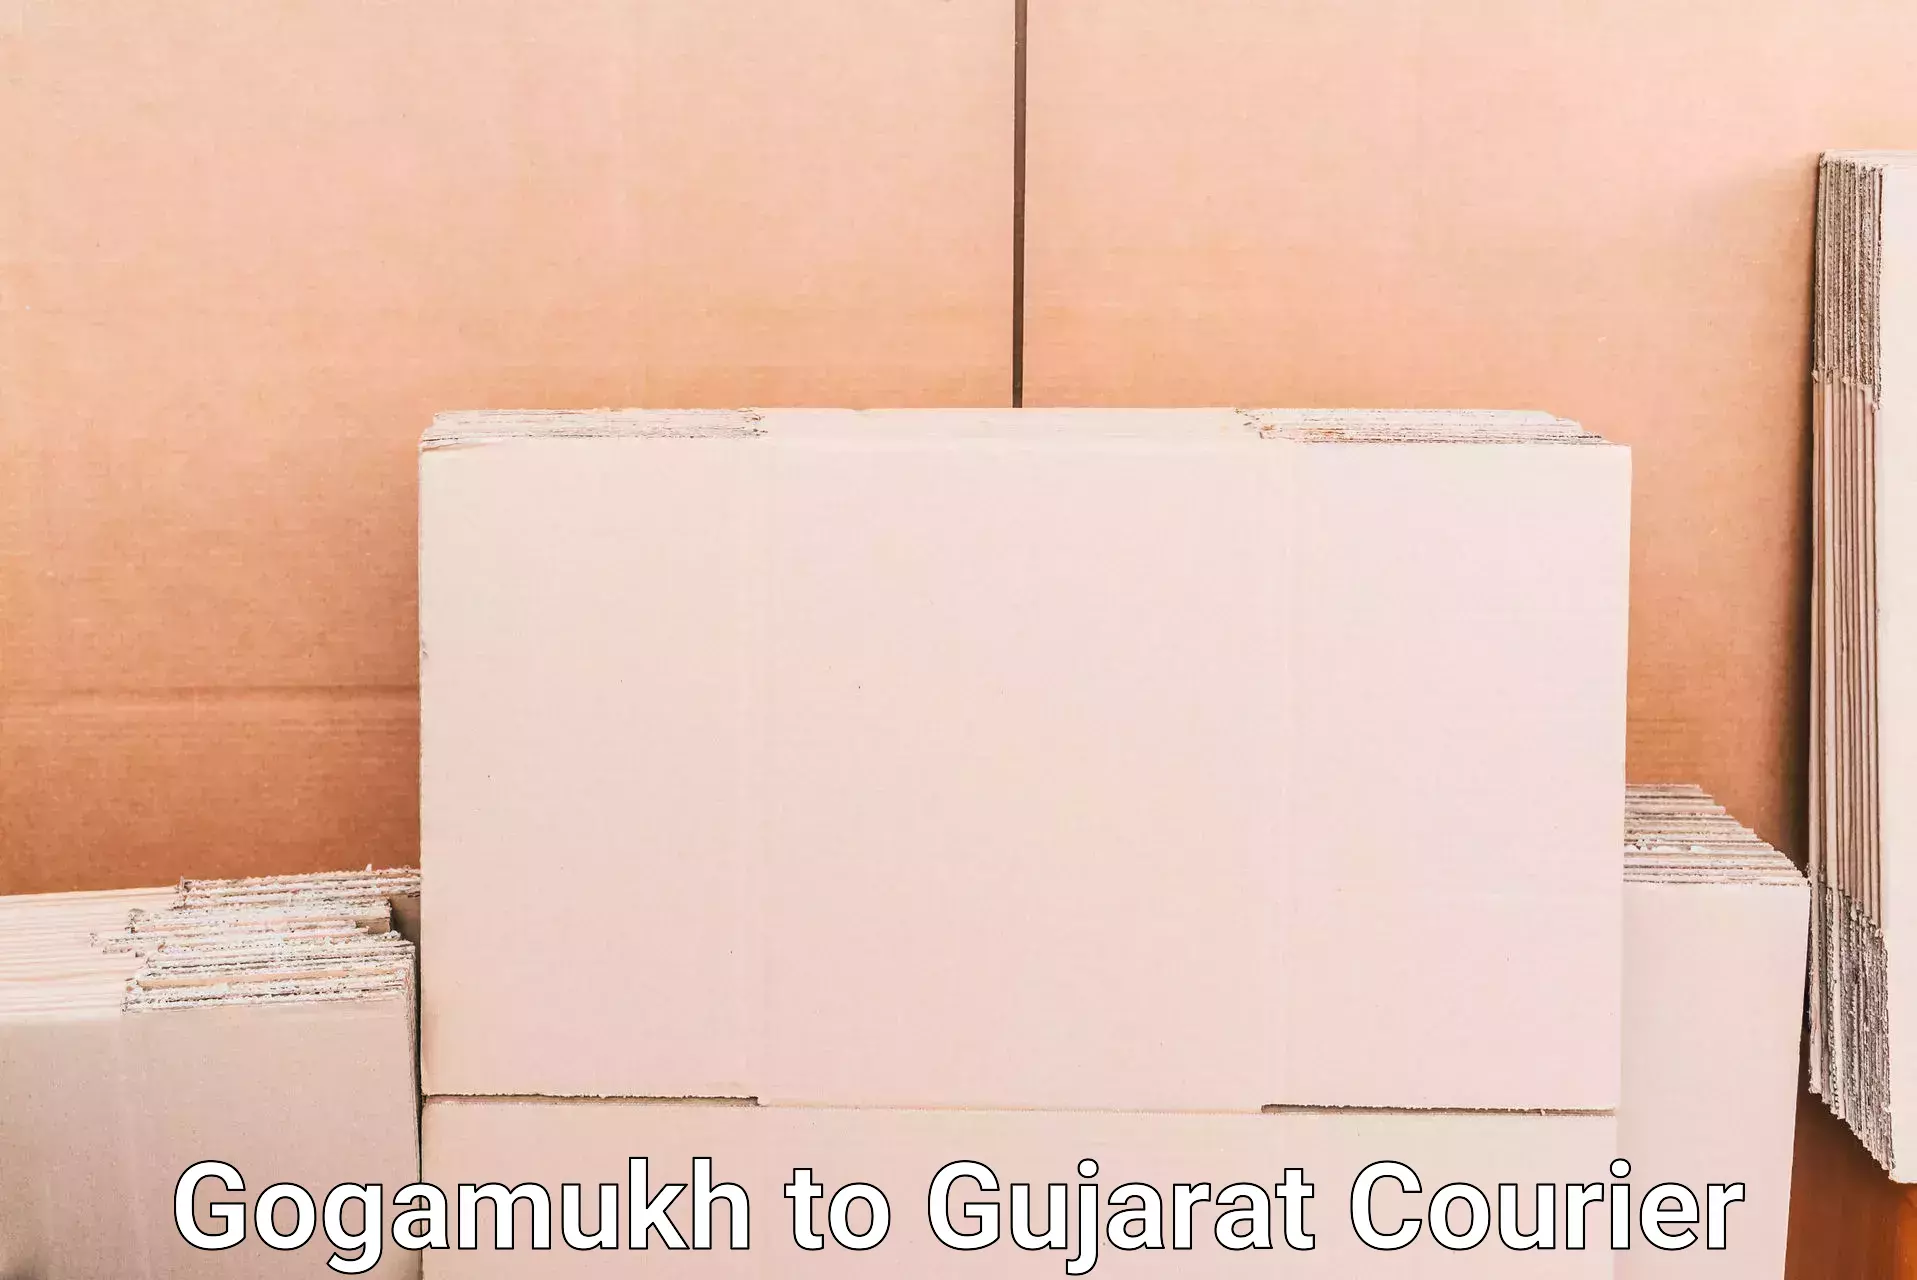 Urgent luggage shipment Gogamukh to Anand